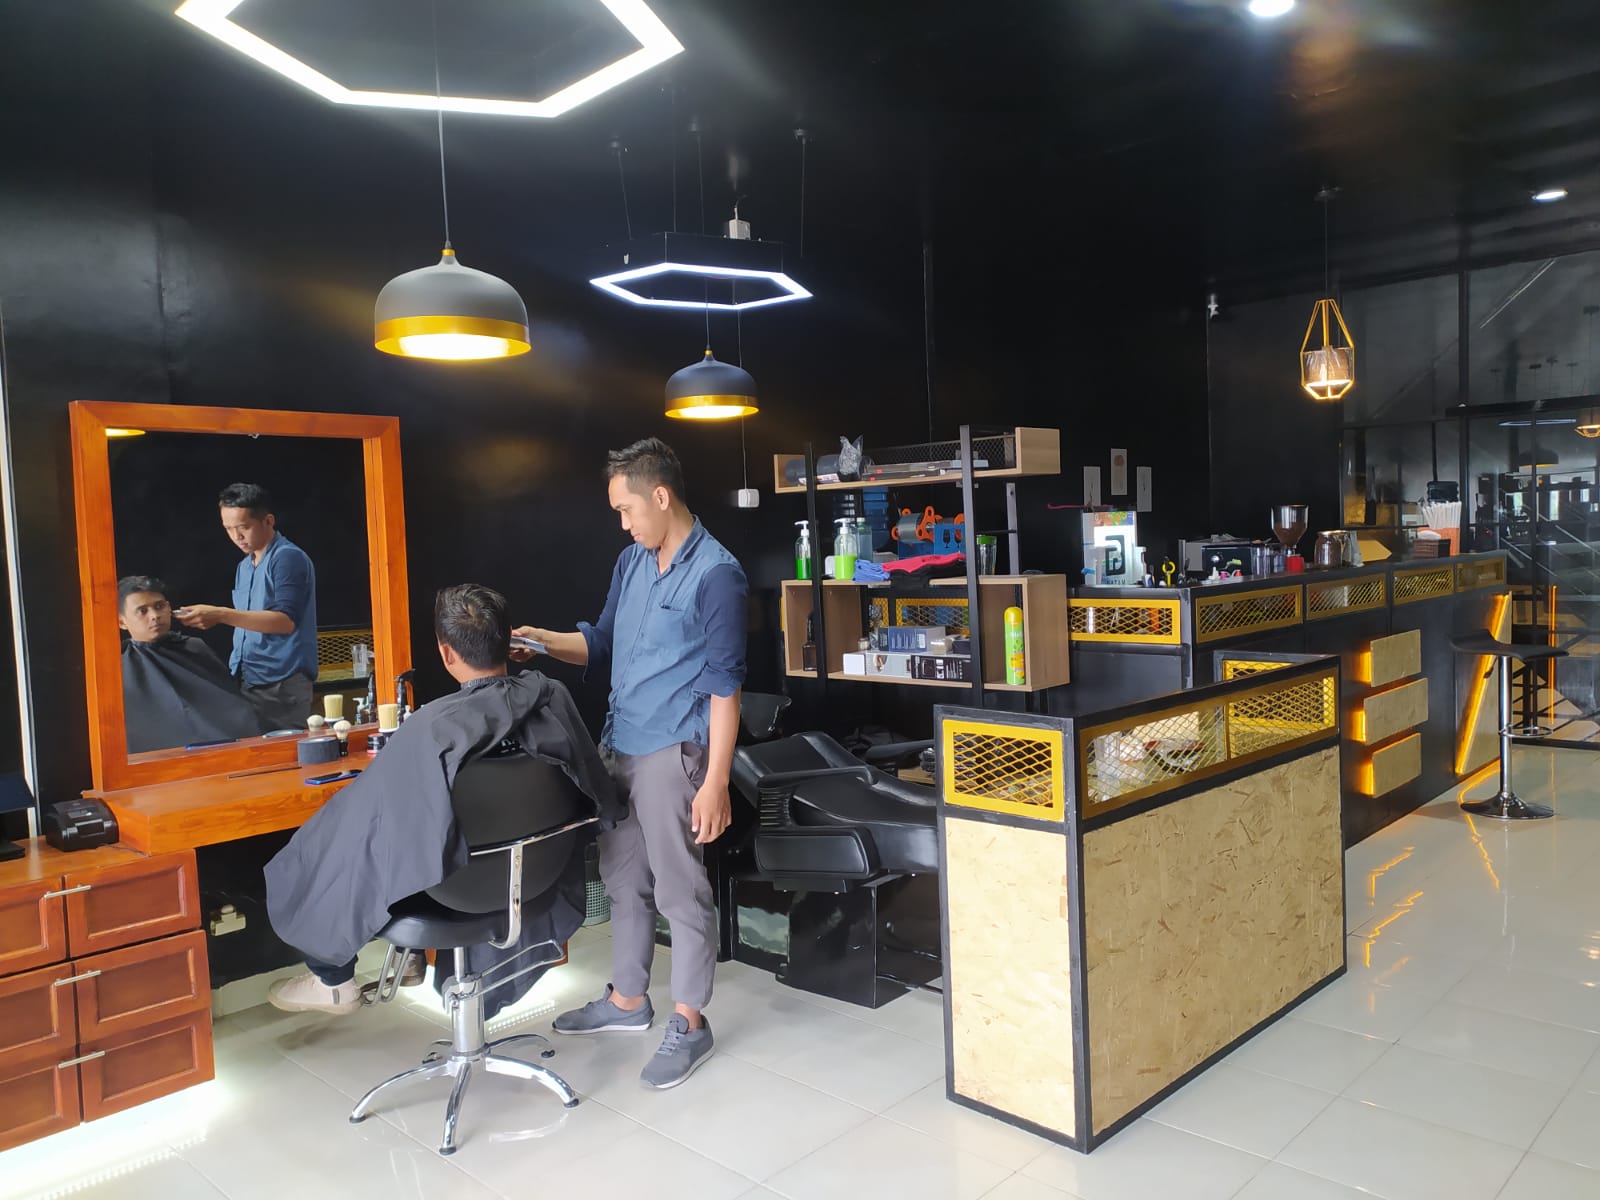 Stasiun Batam menawarkan kedai kopi, salon rambut, dan toko perawatan kulit di Cirebon yang mencakup mie Tarempa khas Batam.